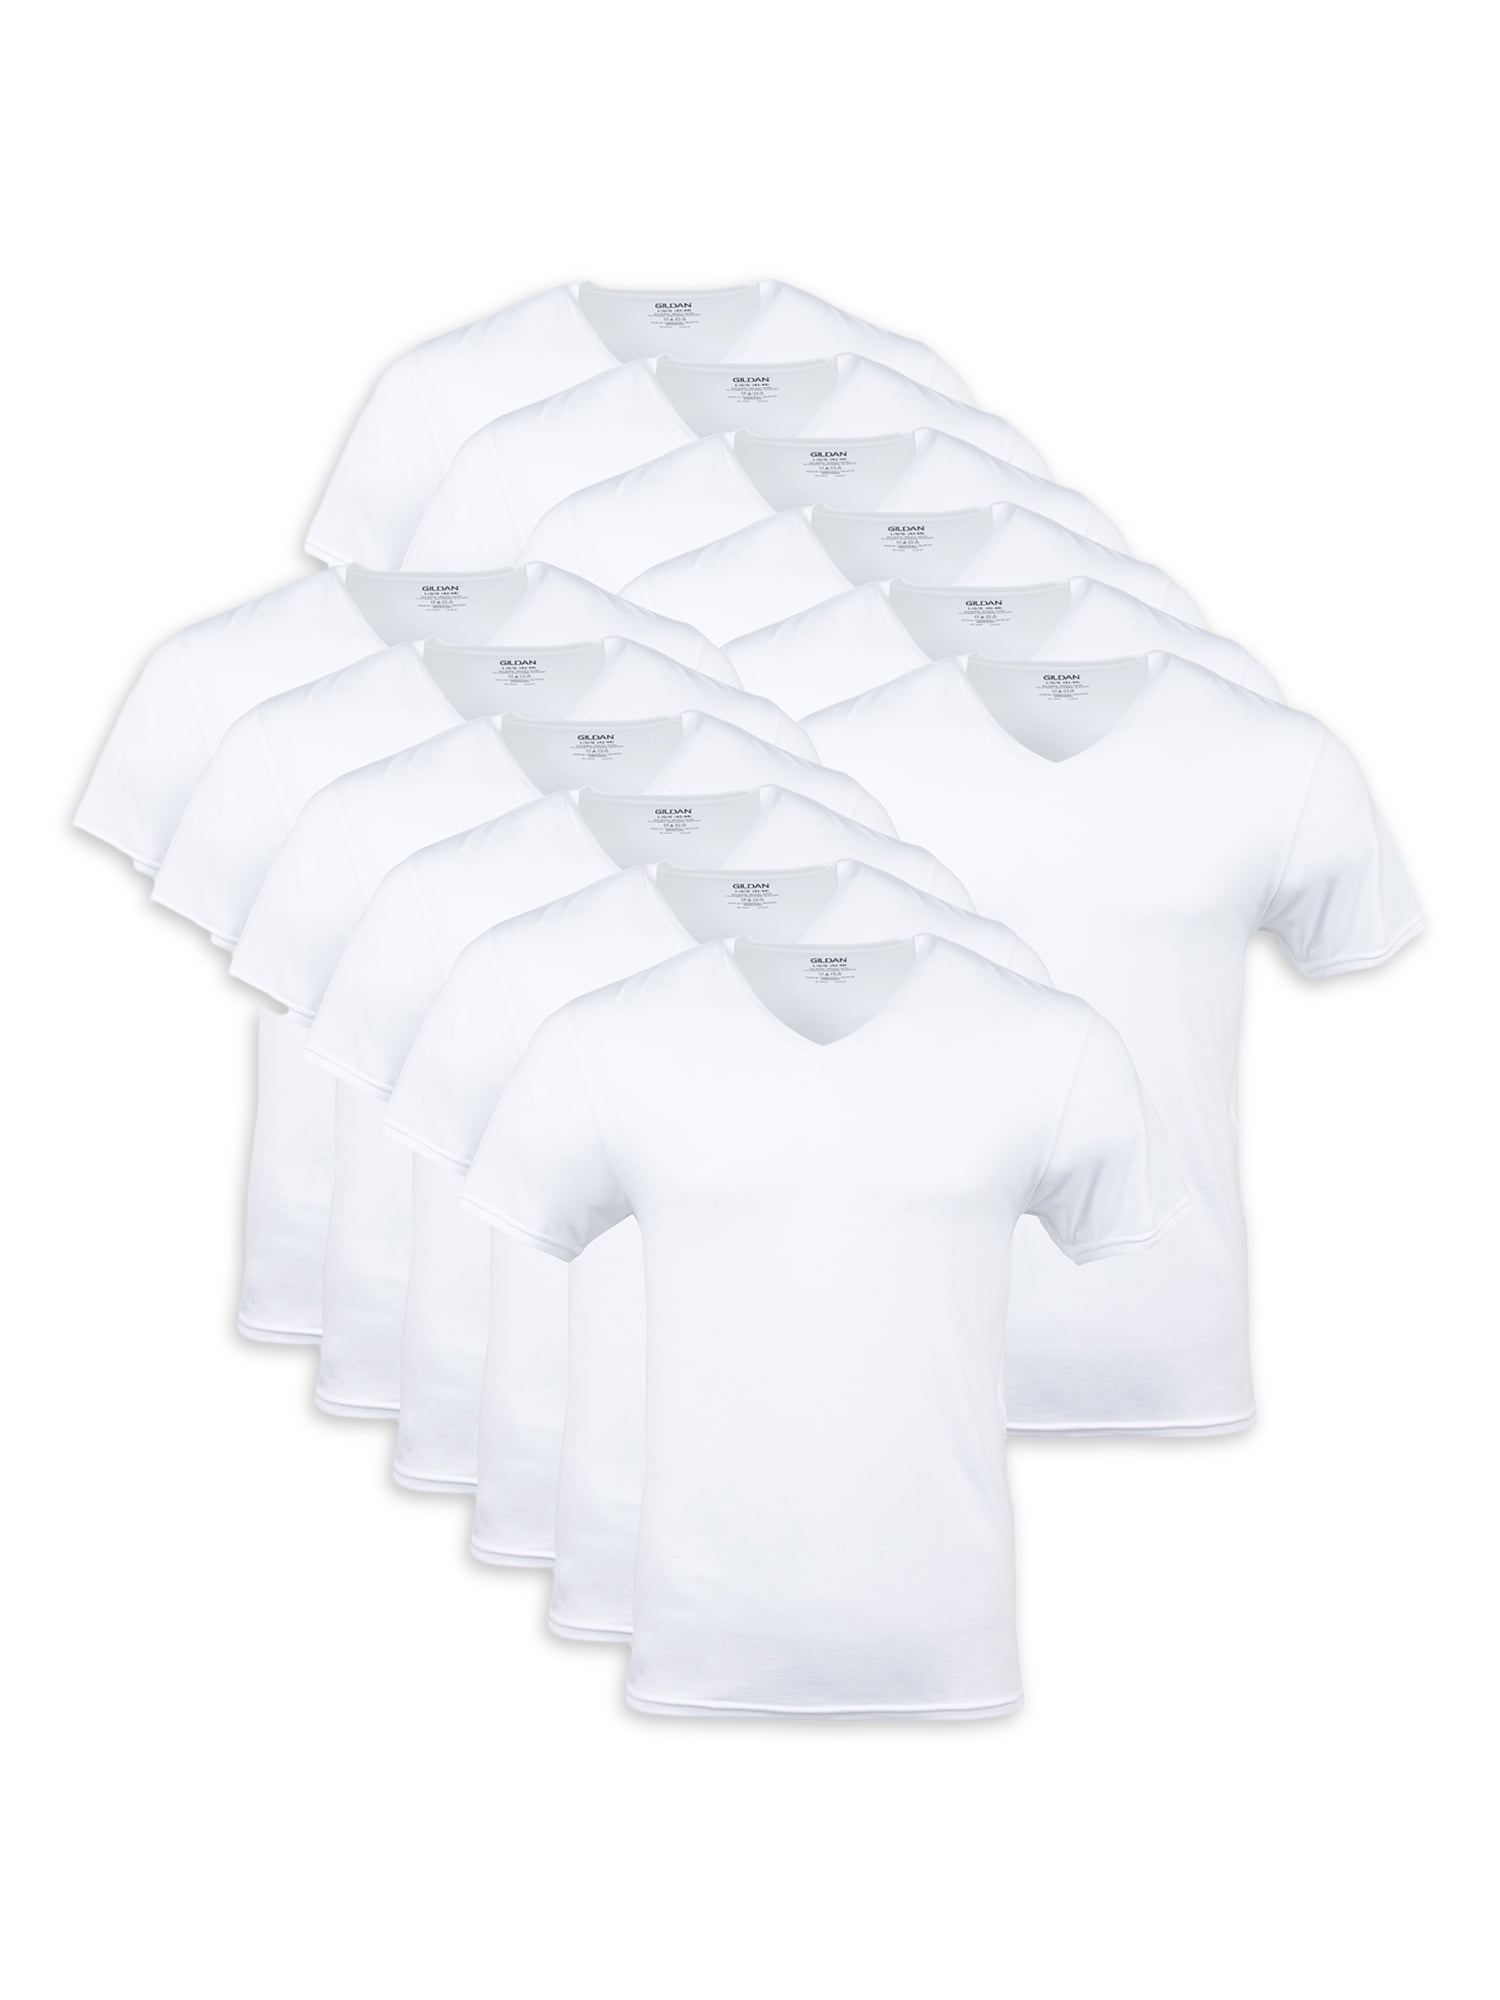 Gildan Adult Men's Short Sleeve V-Neck White T-Shirt, 12-Pack, Sizes S ...